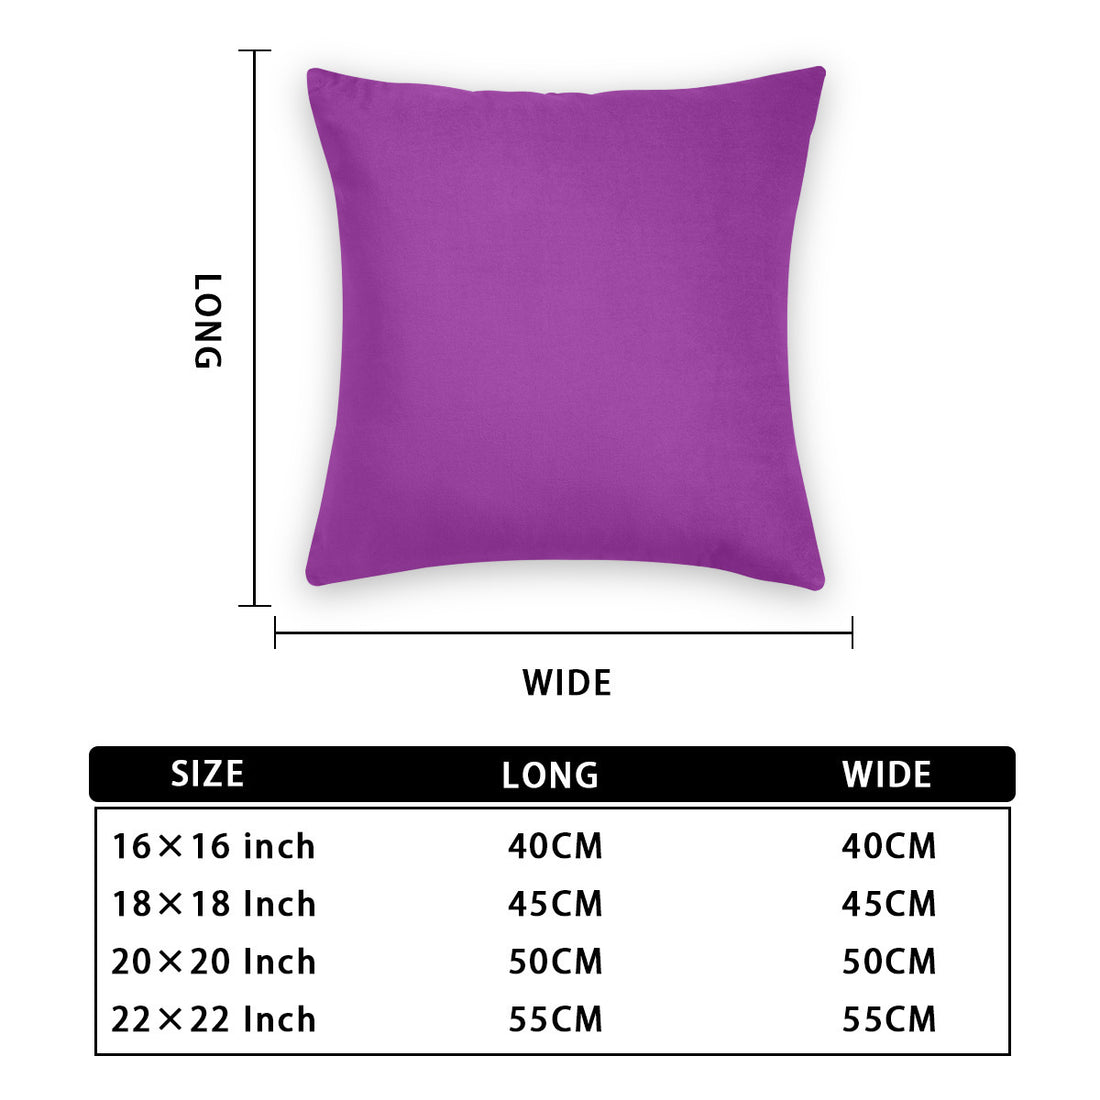 Cushion cover Violet (6 sets, same sides)｜Polyester